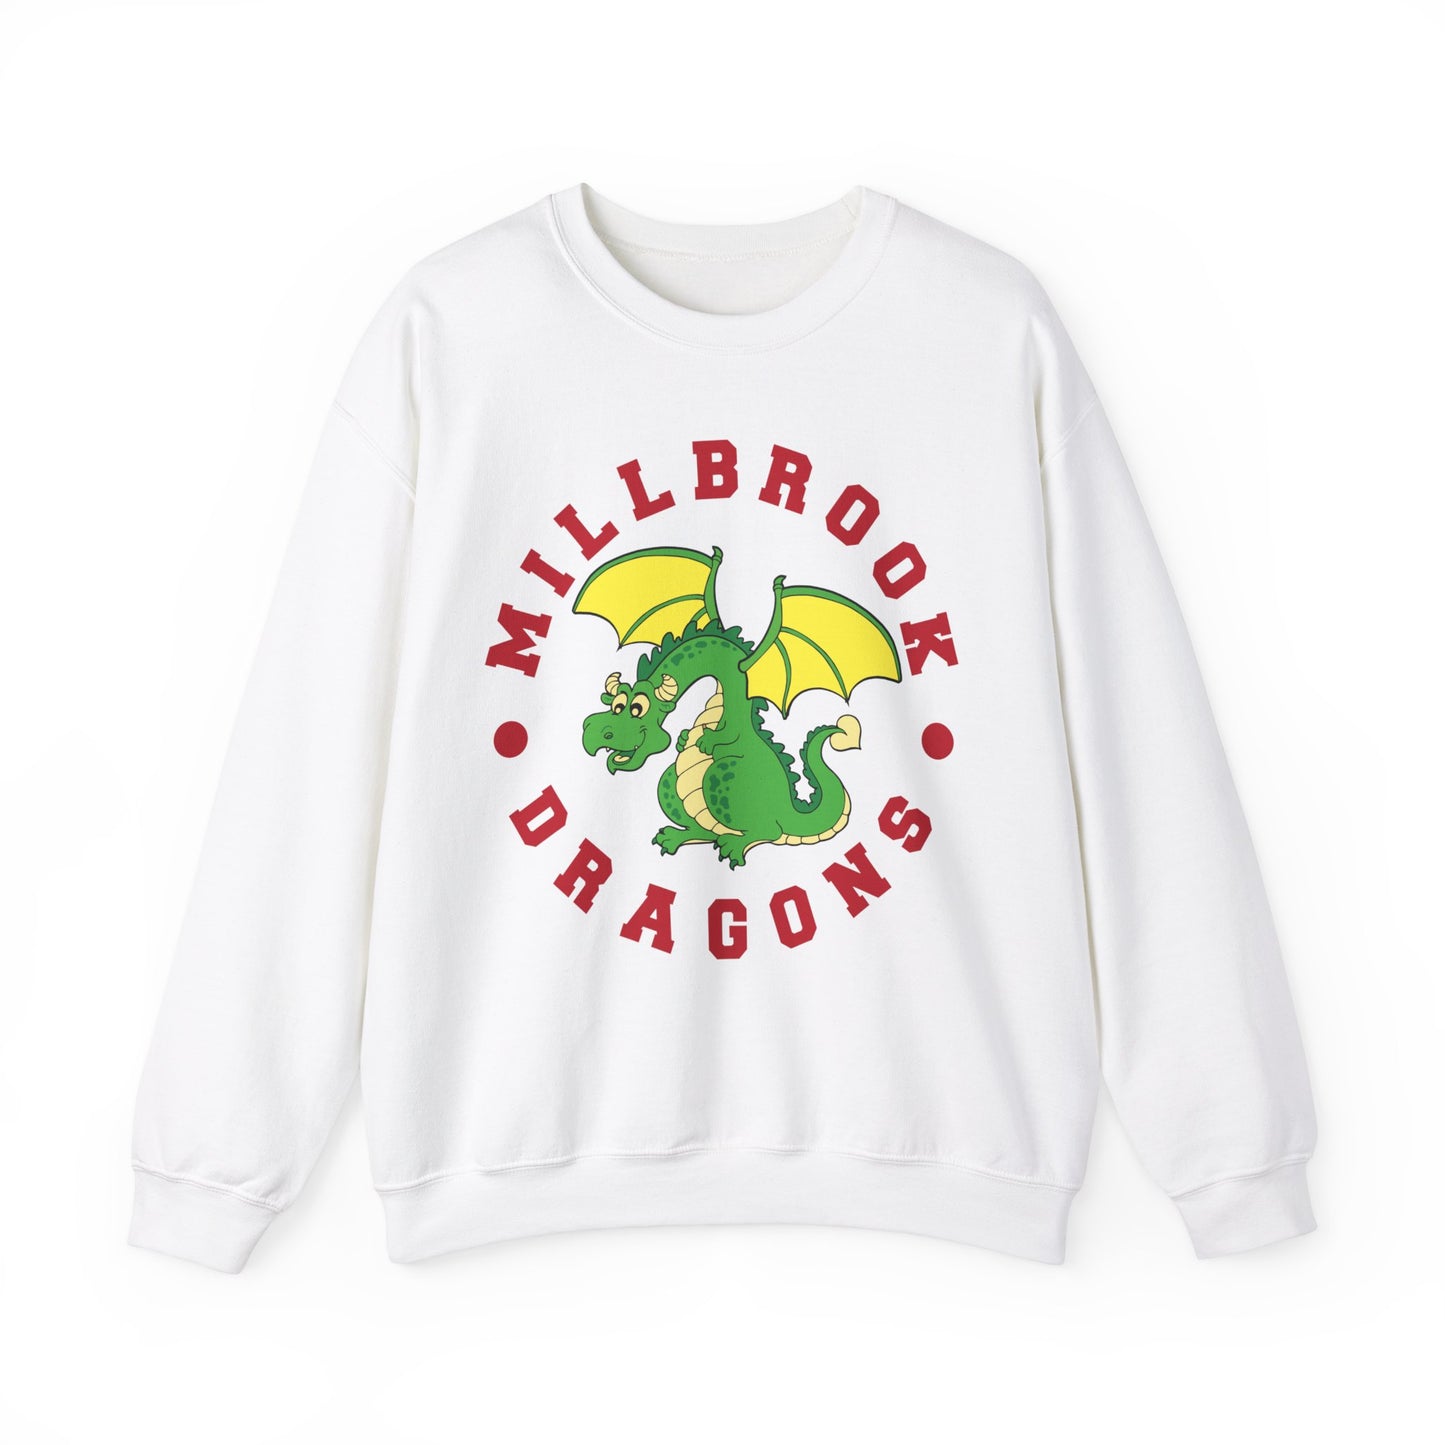 Millbrook Dragons Mascot Crewneck - Adult